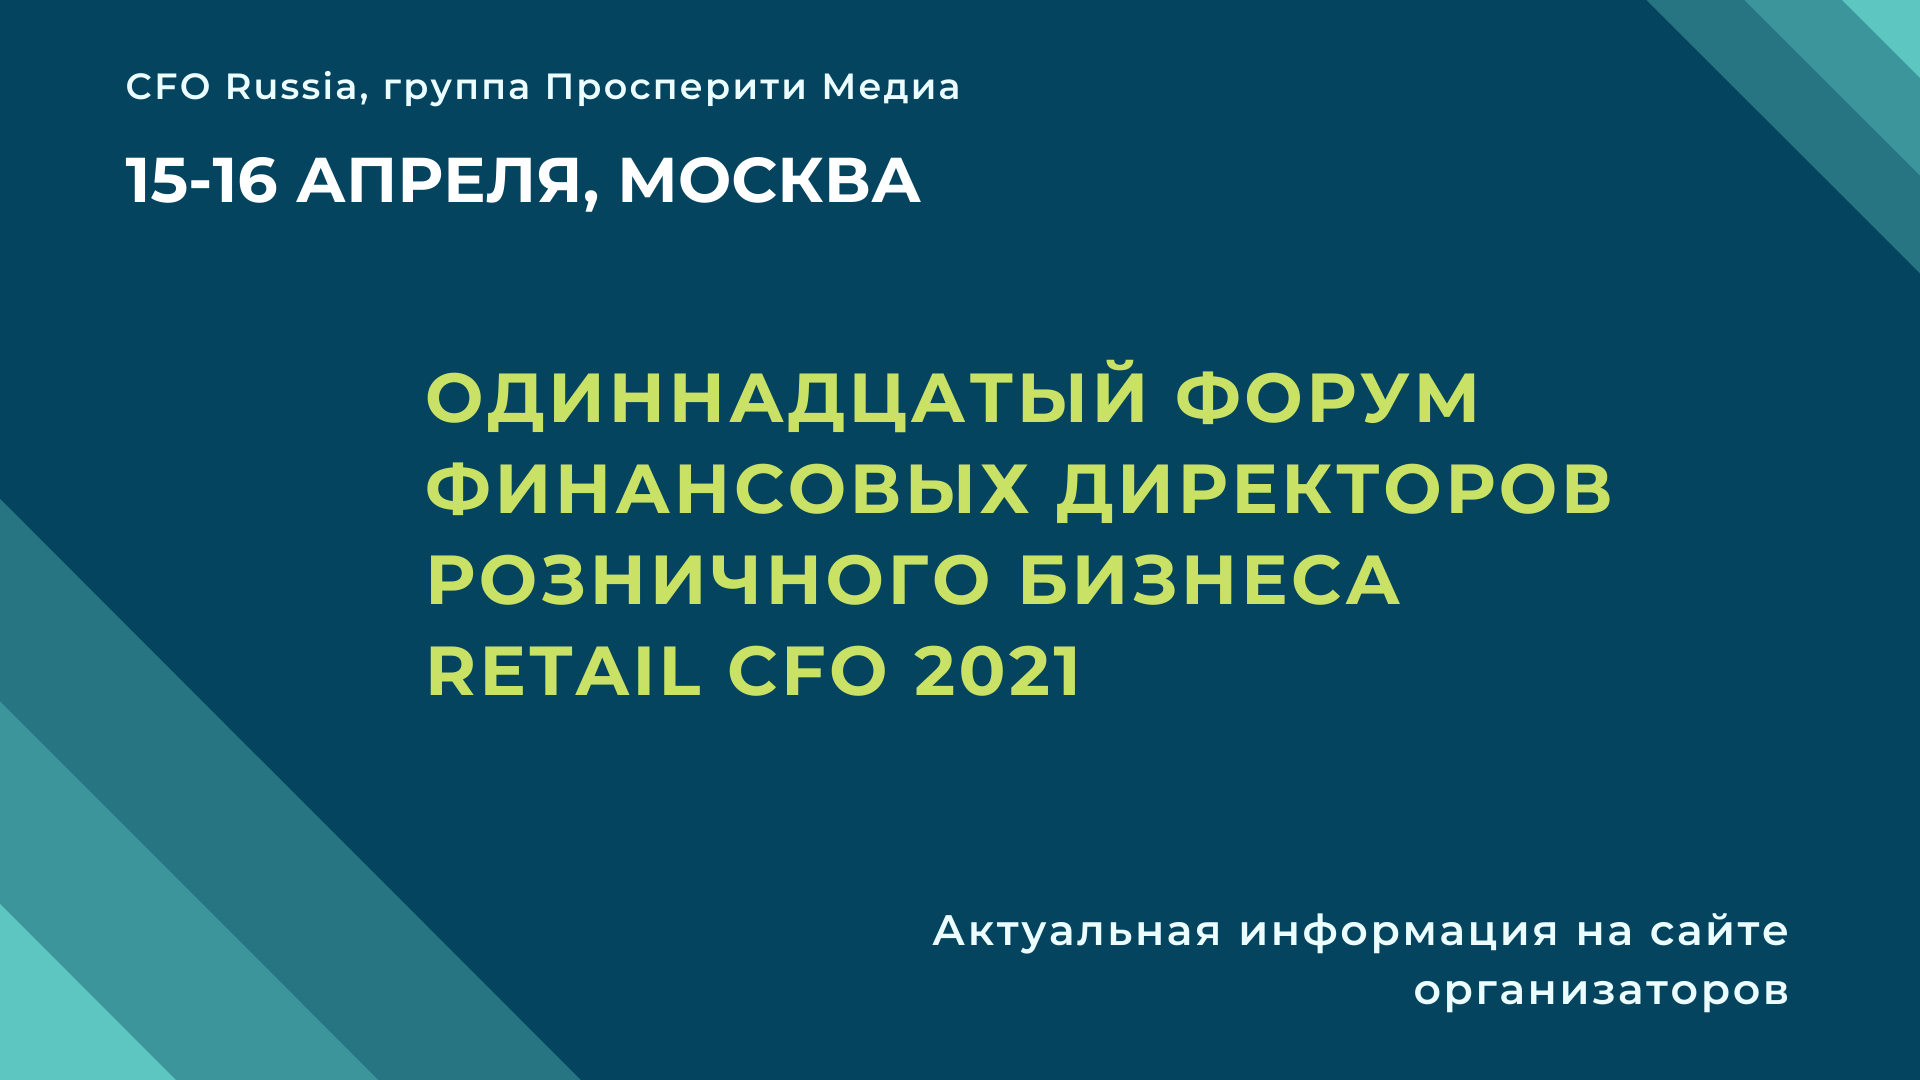 Одиннадцатый форум финансовых директоров розничного бизнеса Retail CFO 2021